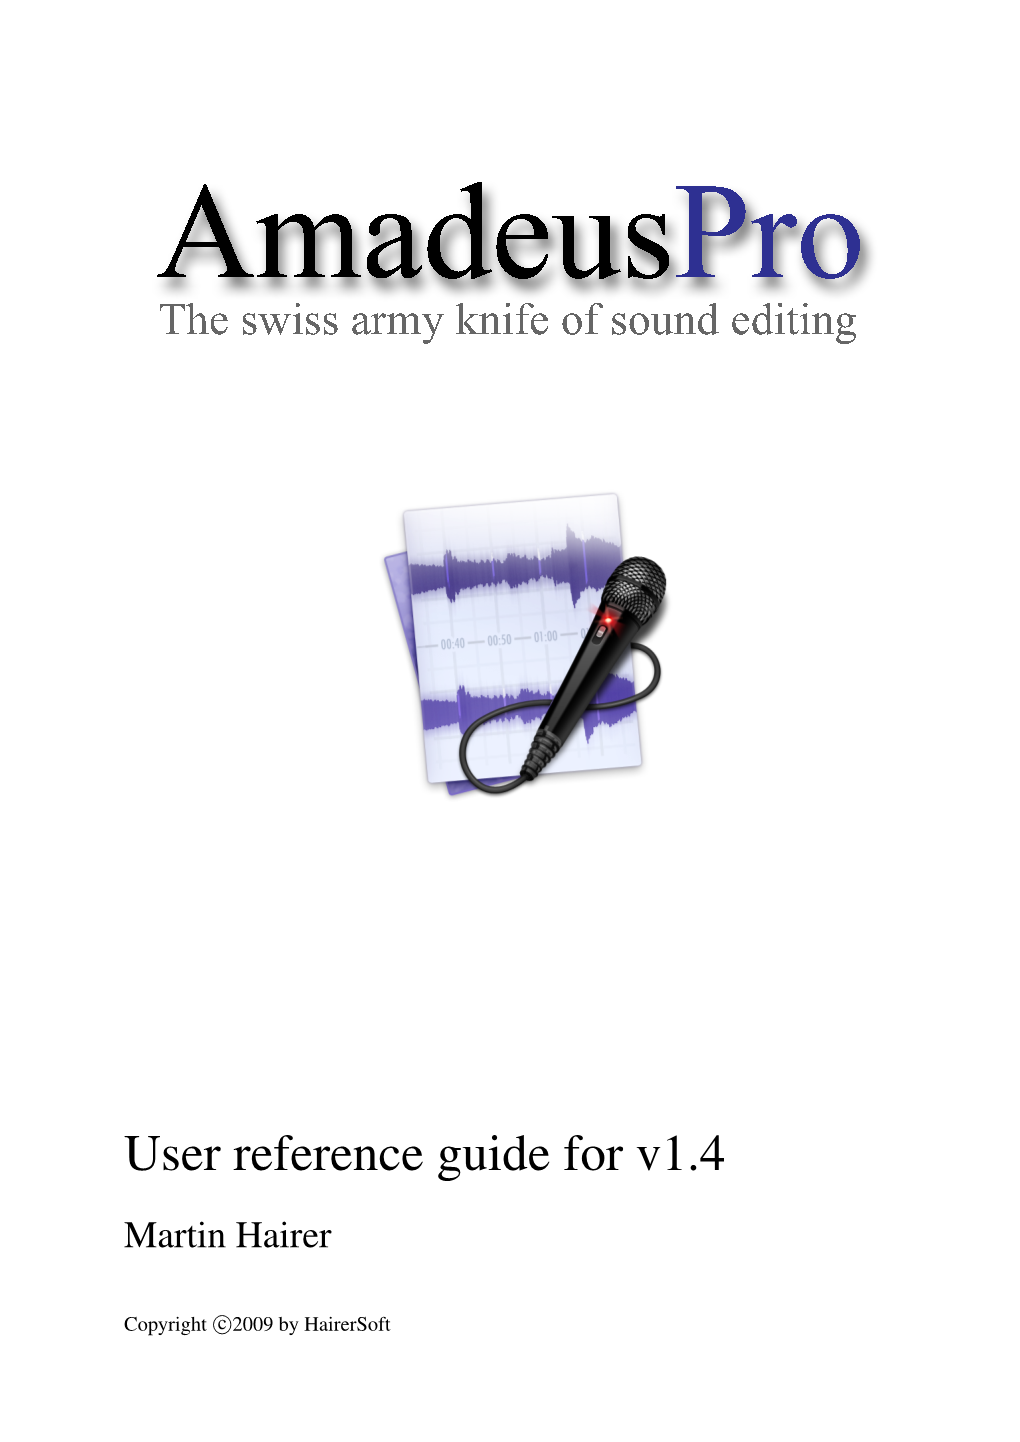 Amadeuspro Manual